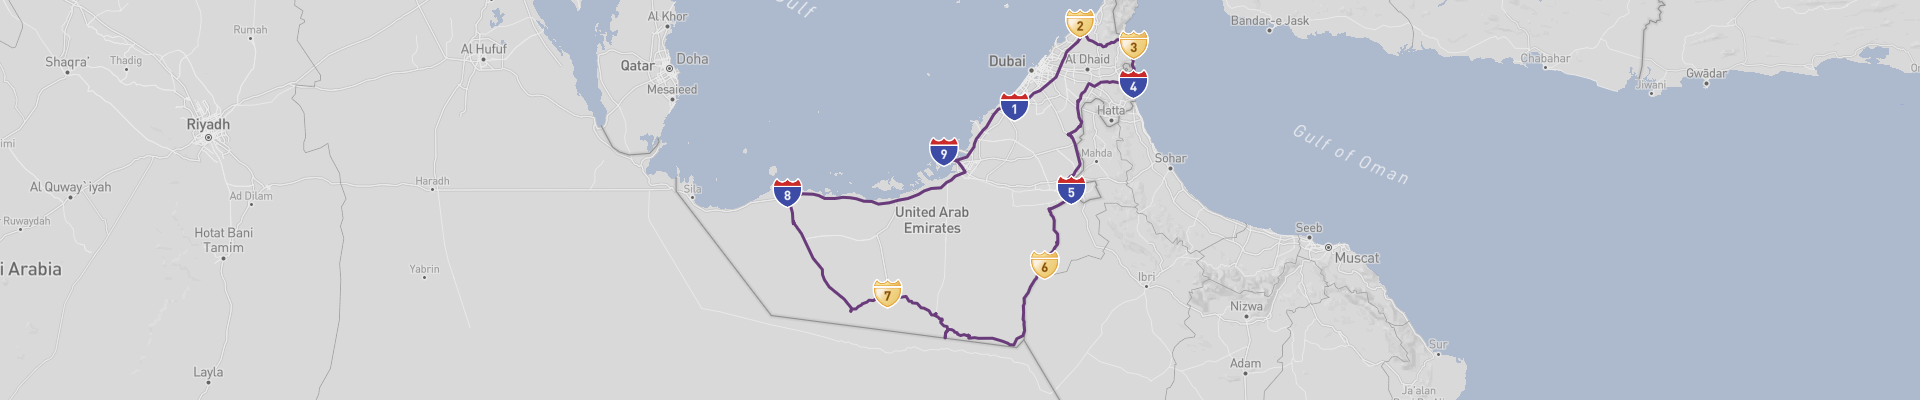 United Arab Emirates Road Trip